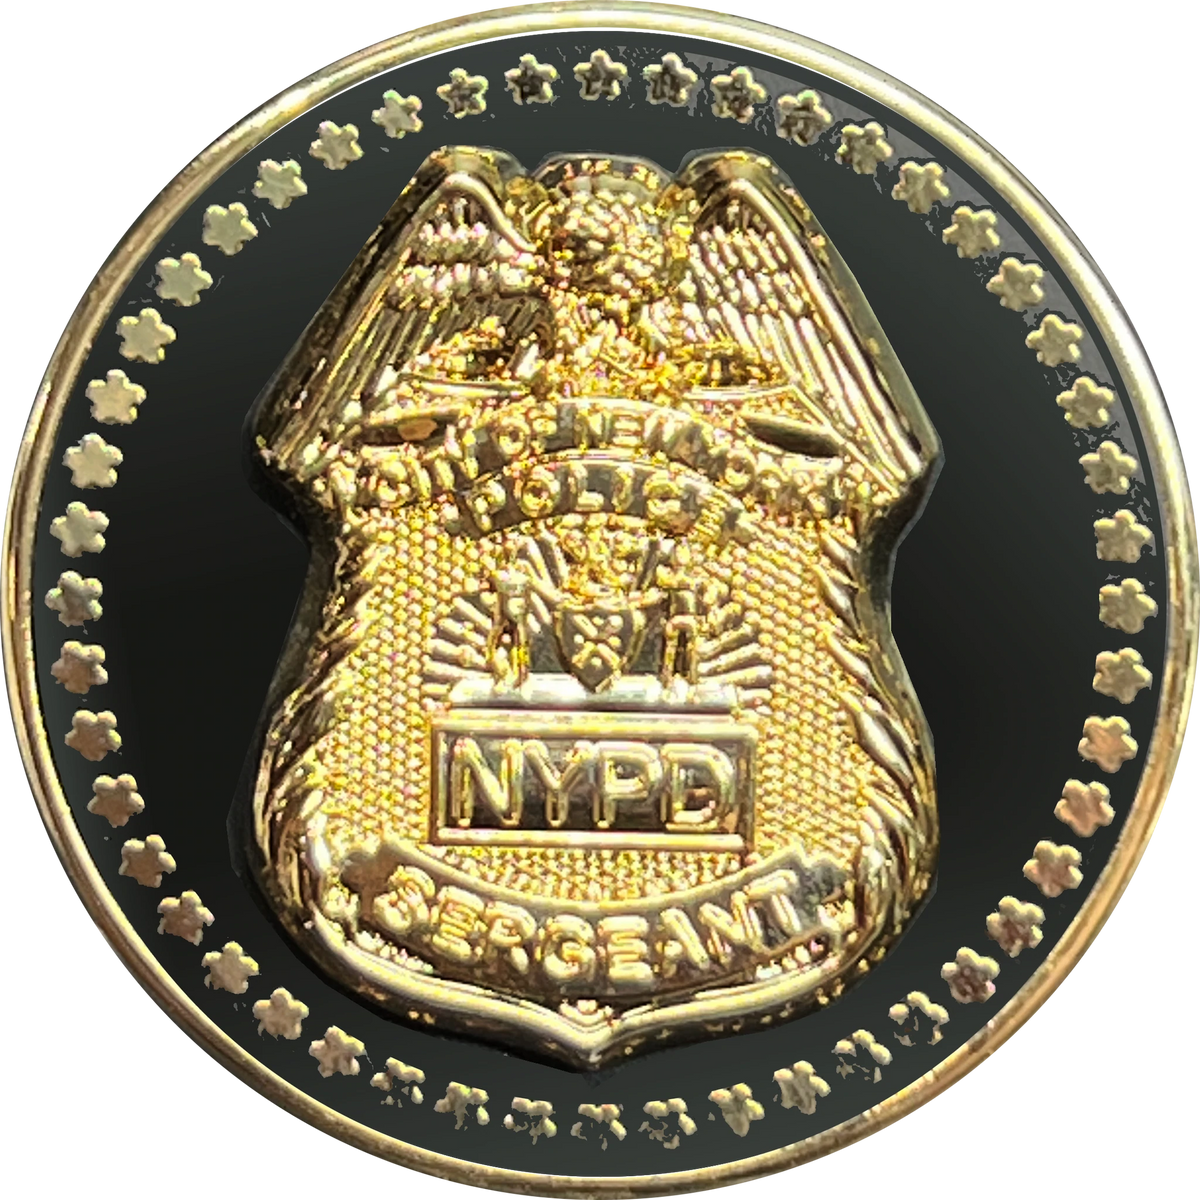 NYPD GOLD TIE CLIP